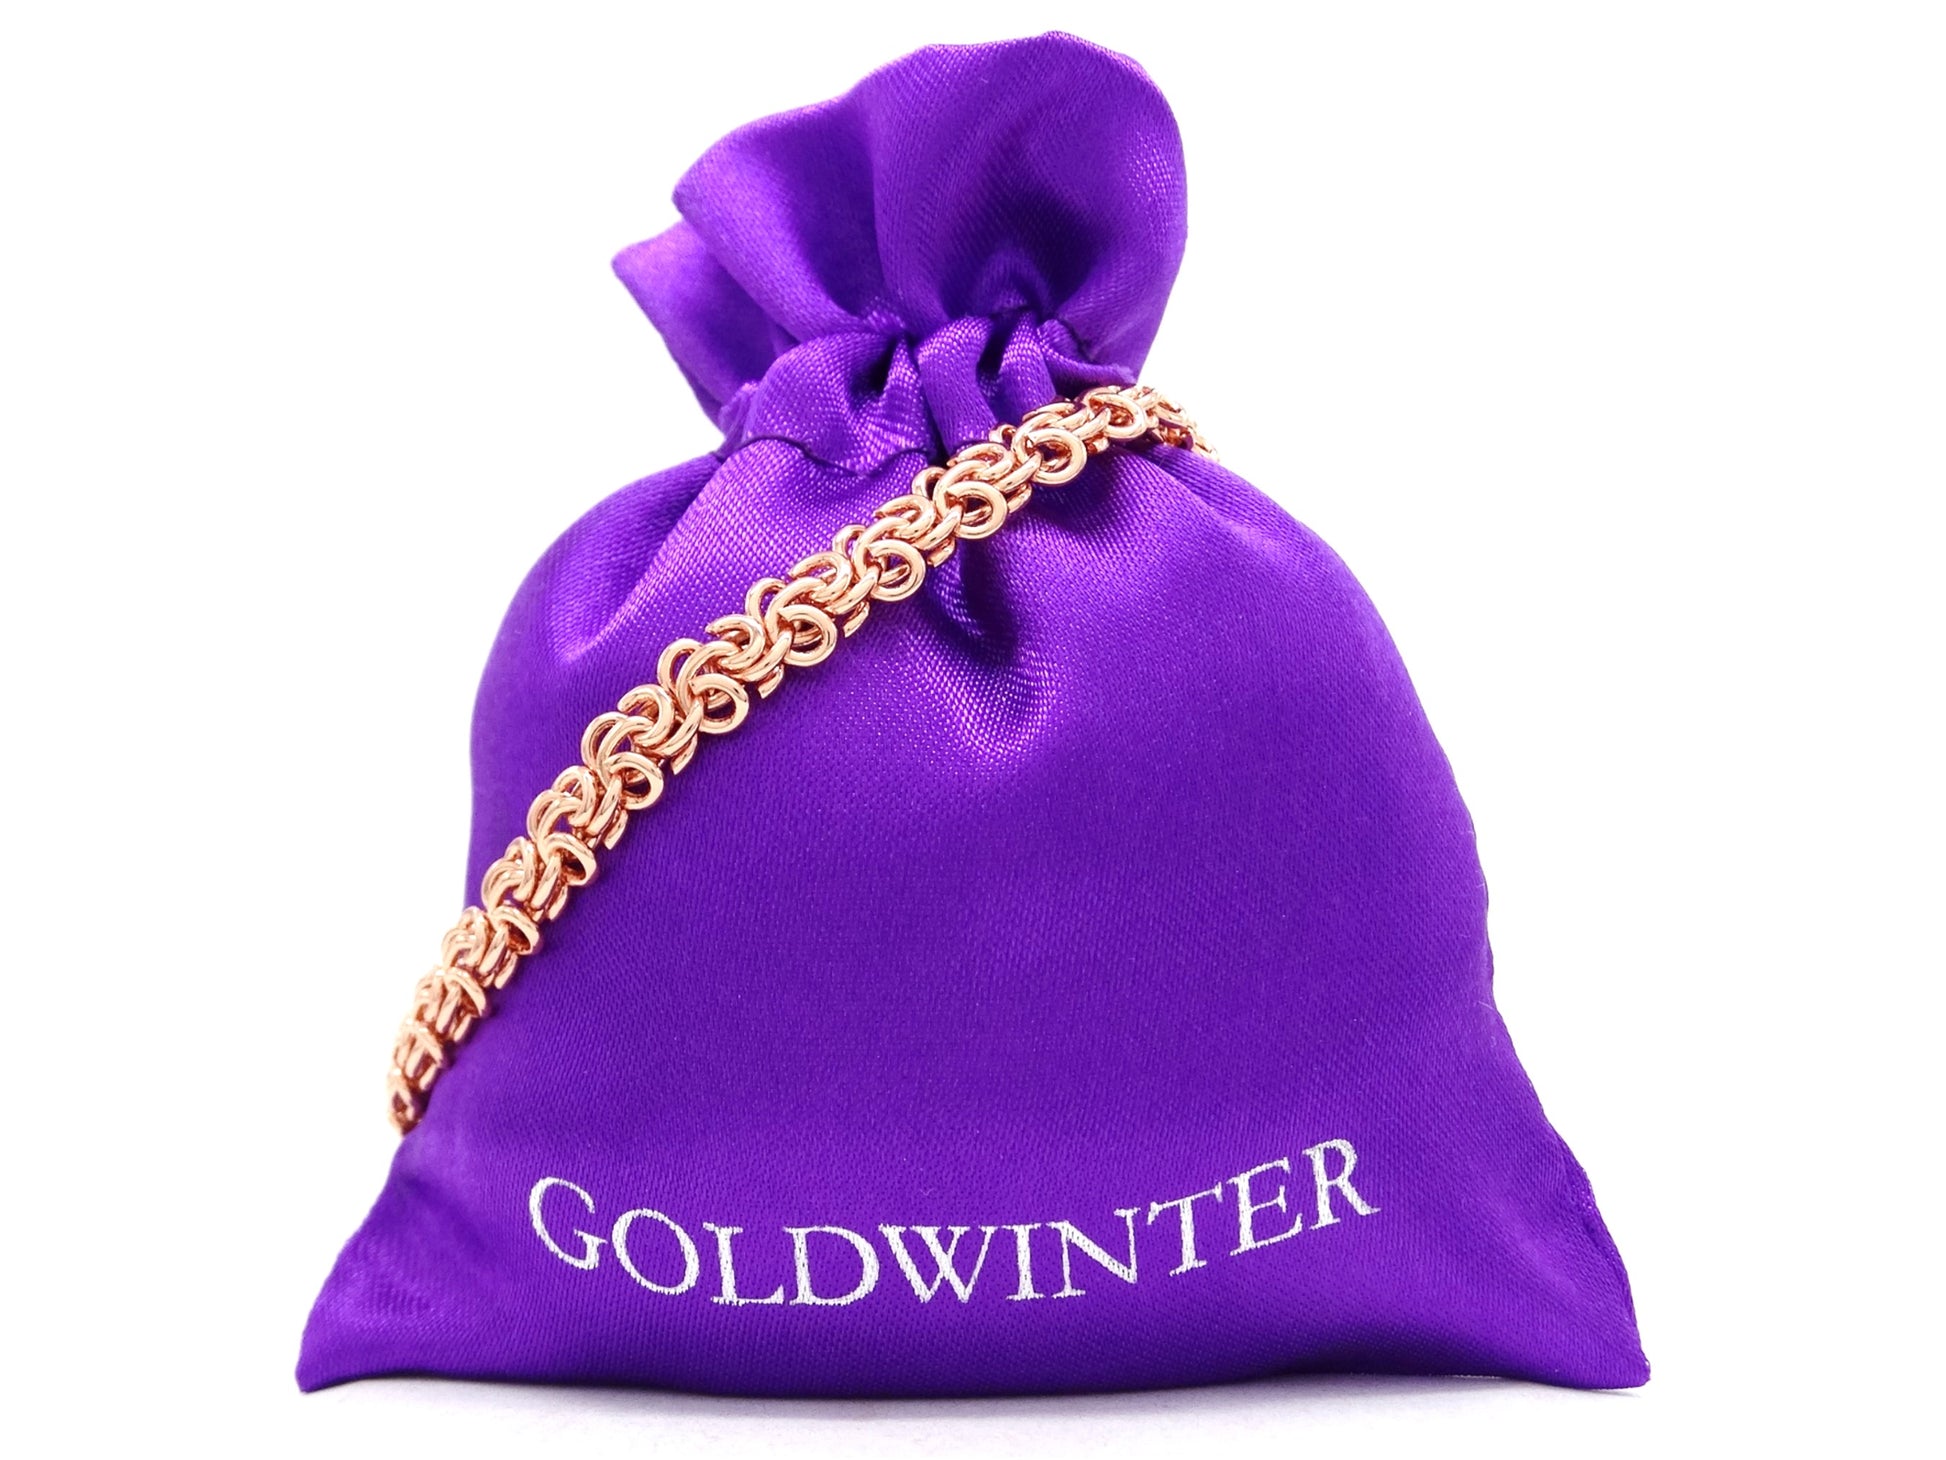 Rose gold interweaving chain bracelet GIFT BAG